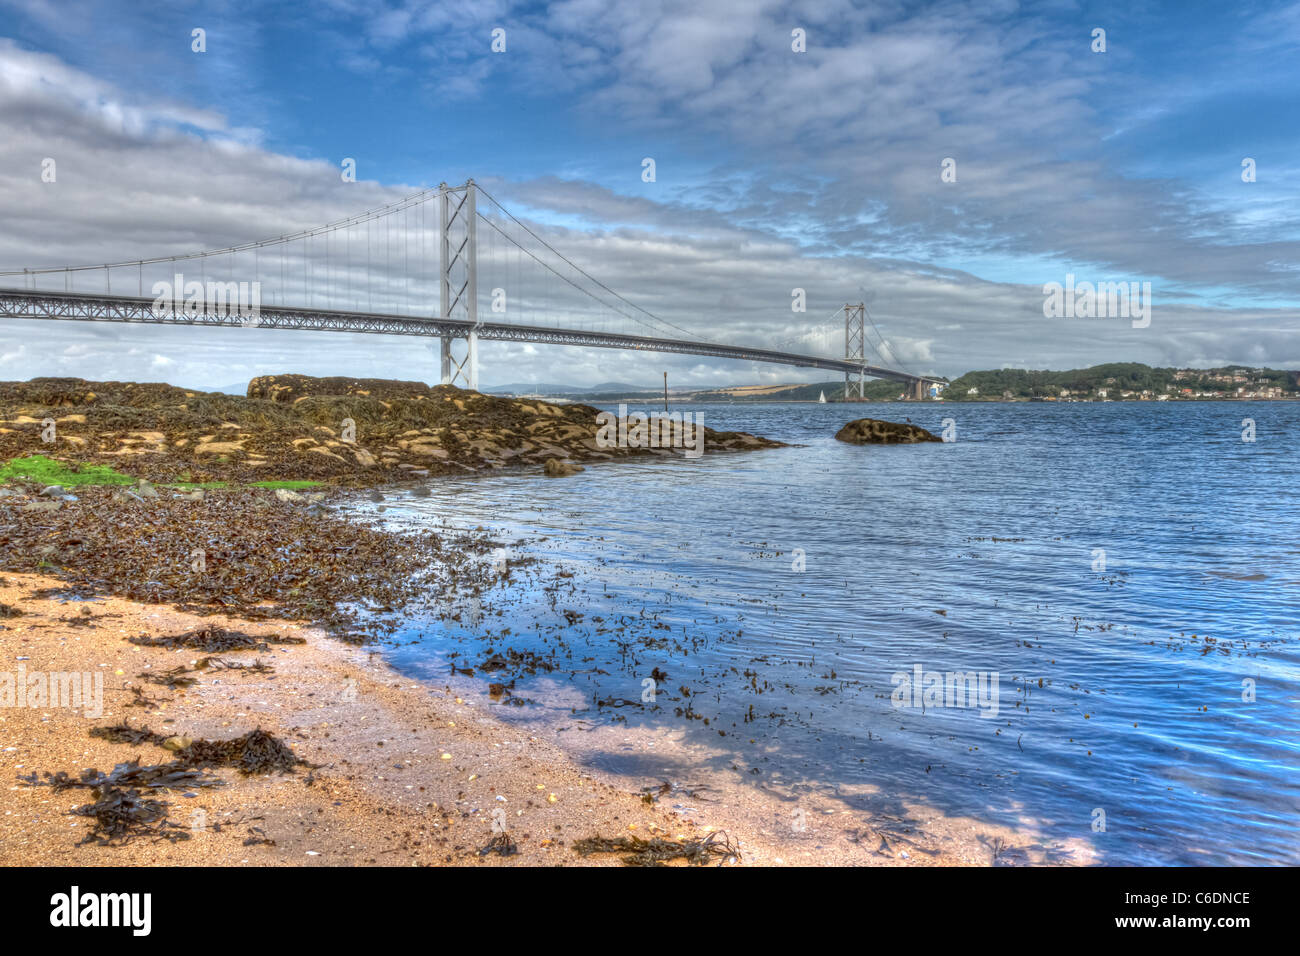 Immagine hdr del mondo famoso Forth Road Bridge spanning Firth of Forth, Scozia. Foto Stock